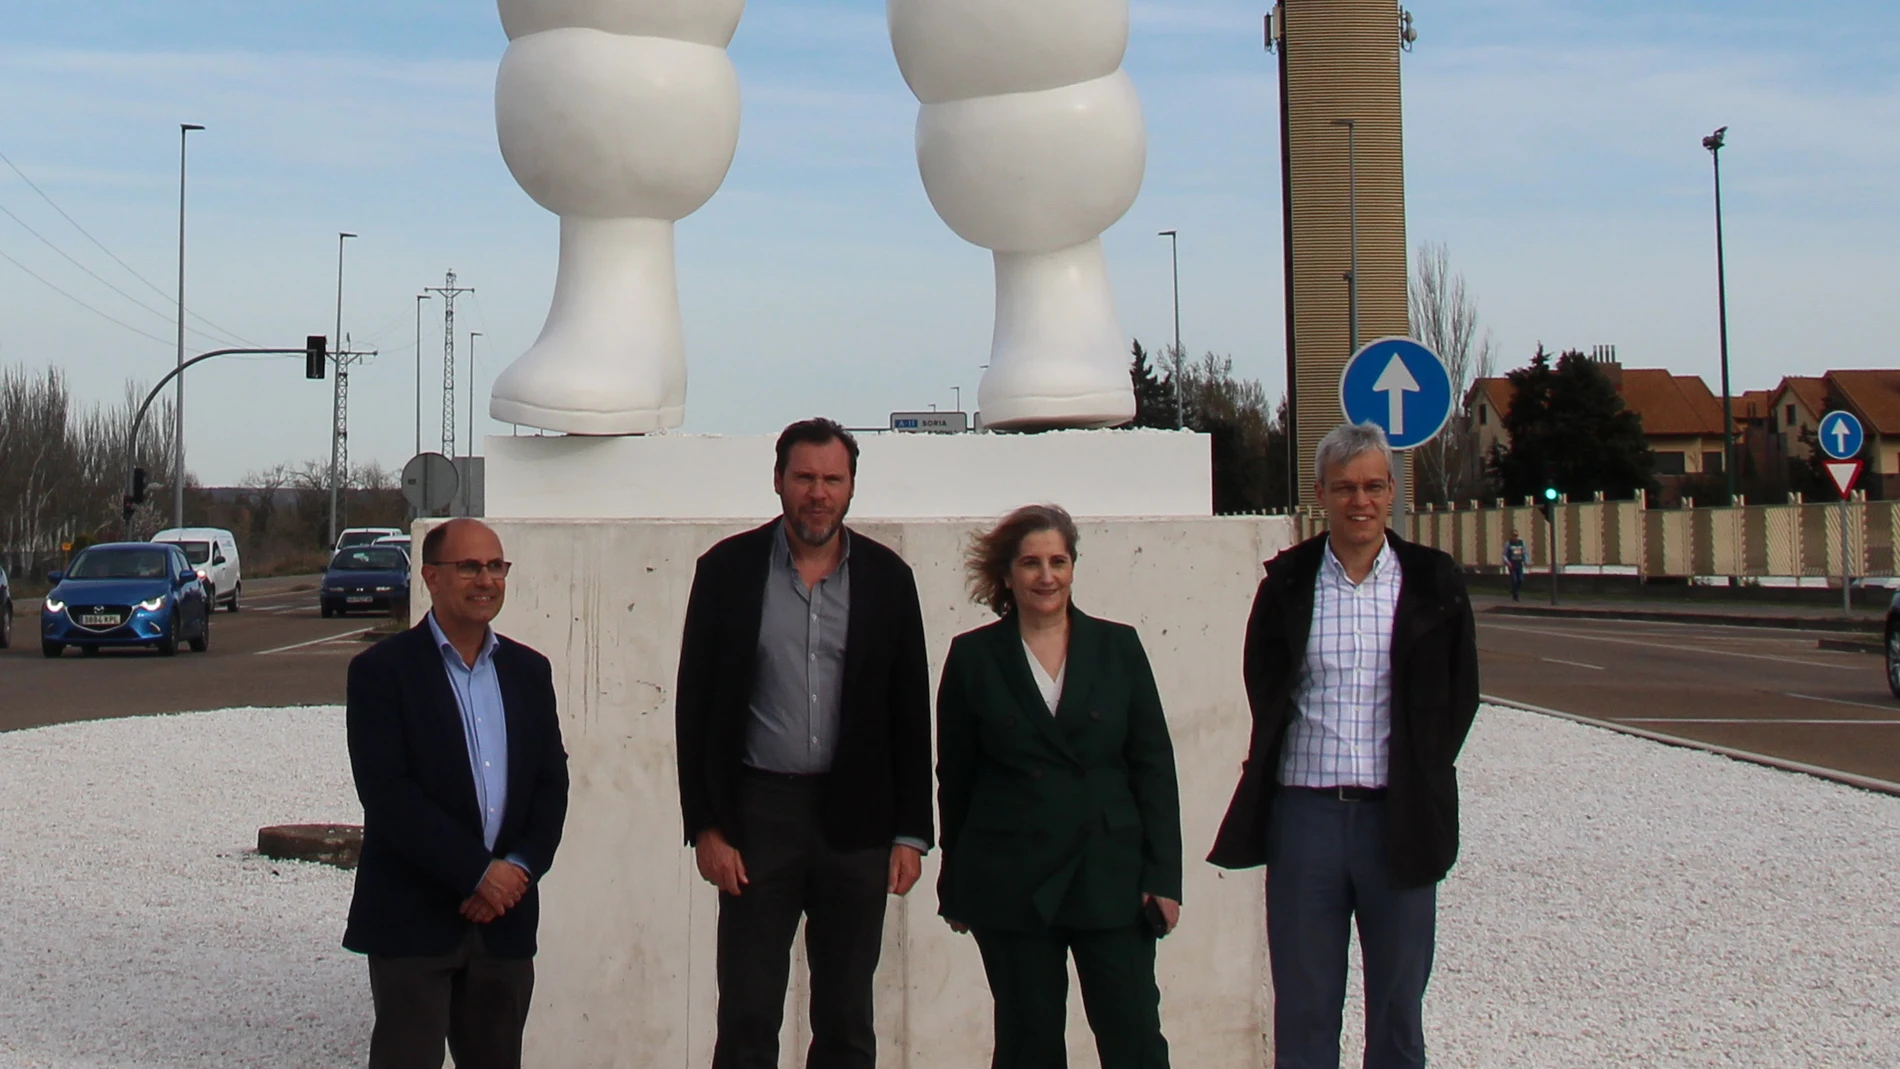 l alcalde de Valladolid, Óscar Puente, acompañado por Mª Paz Robina, Directora General de Michelin España Portugal, y Bruno Arias, Director de la fábrica de Michelin Valladolid, inauguran la Glorieta de Bibendum en Valladolid